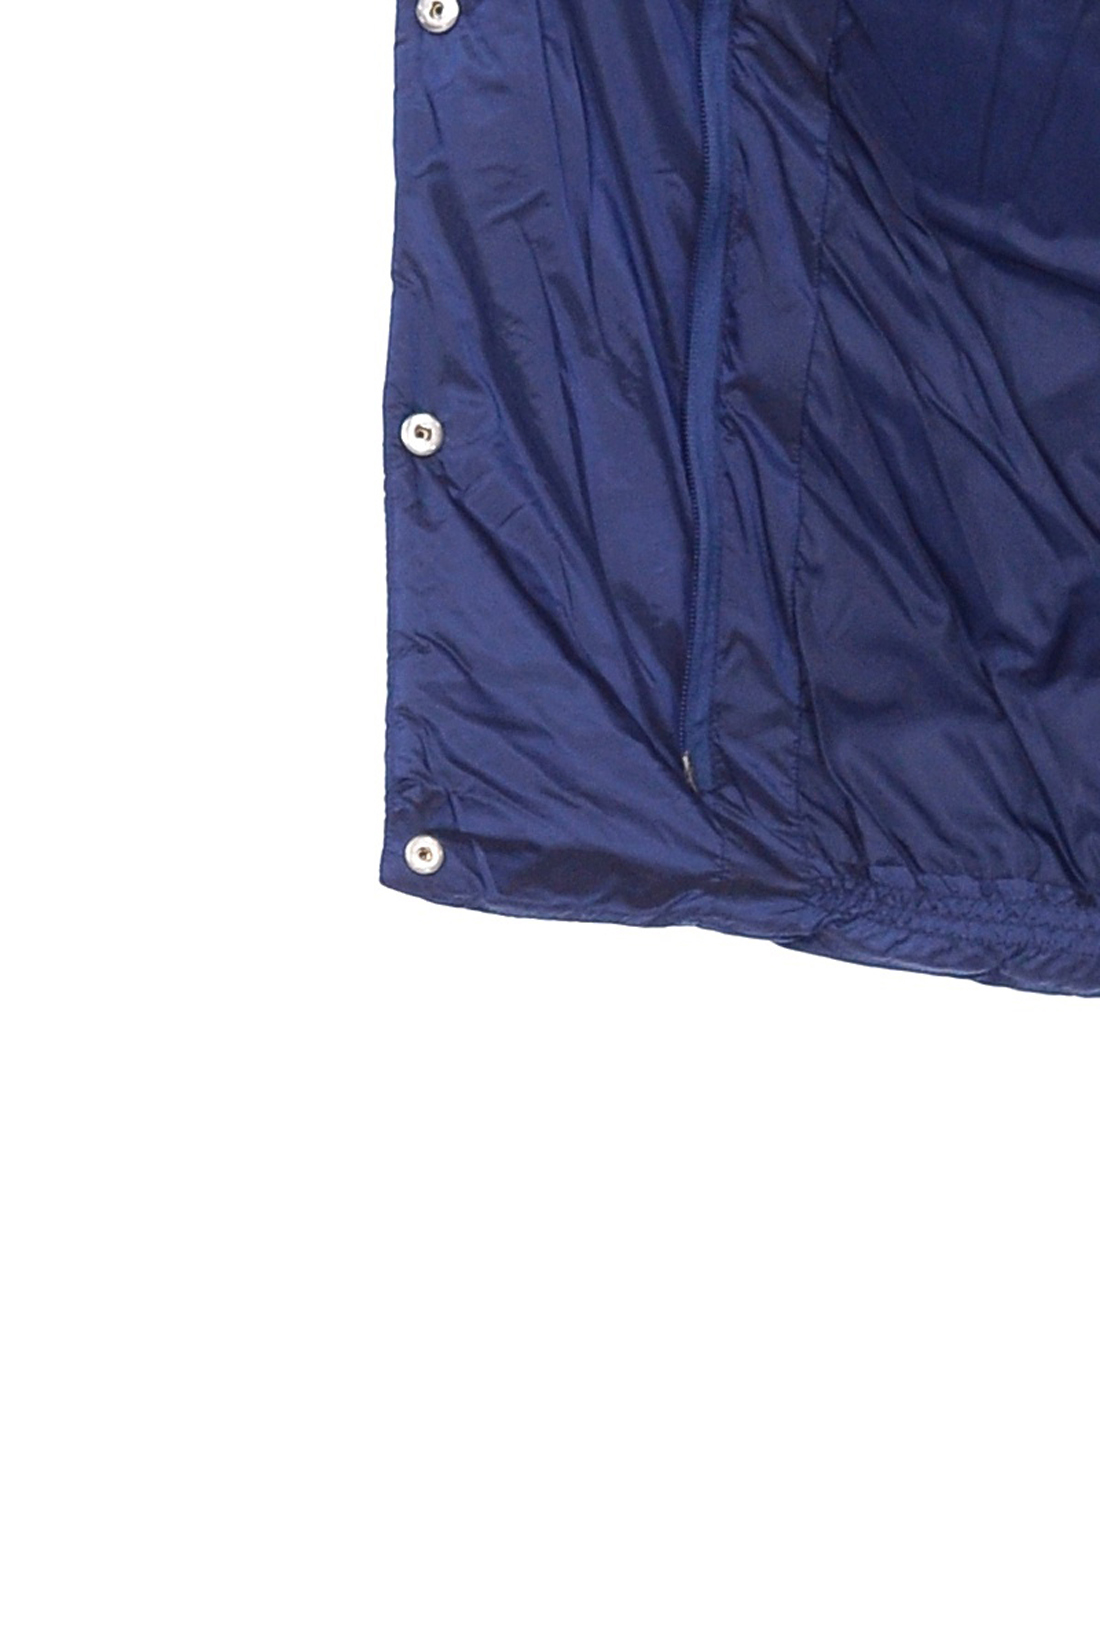 Куртка с капюшоном и асимметричной застёжкой (арт. baon B038524), размер L, цвет синий Куртка с капюшоном и асимметричной застёжкой (арт. baon B038524) - фото 4